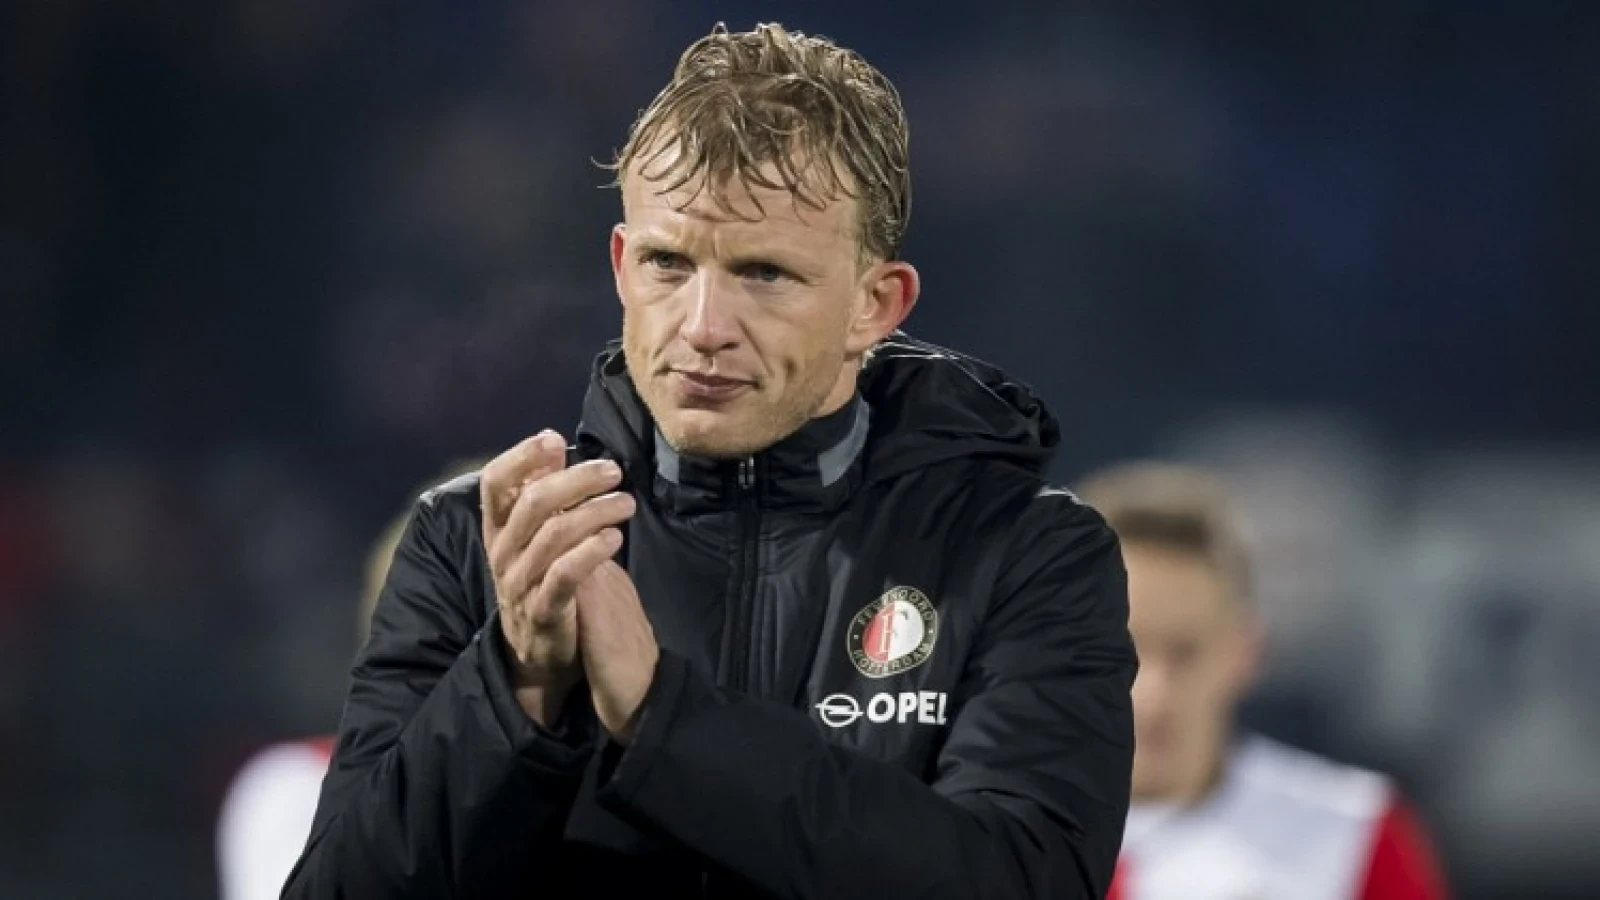 Kuyt: 'Feyenoord hoeft ook zijn eindstation niet te zijn'